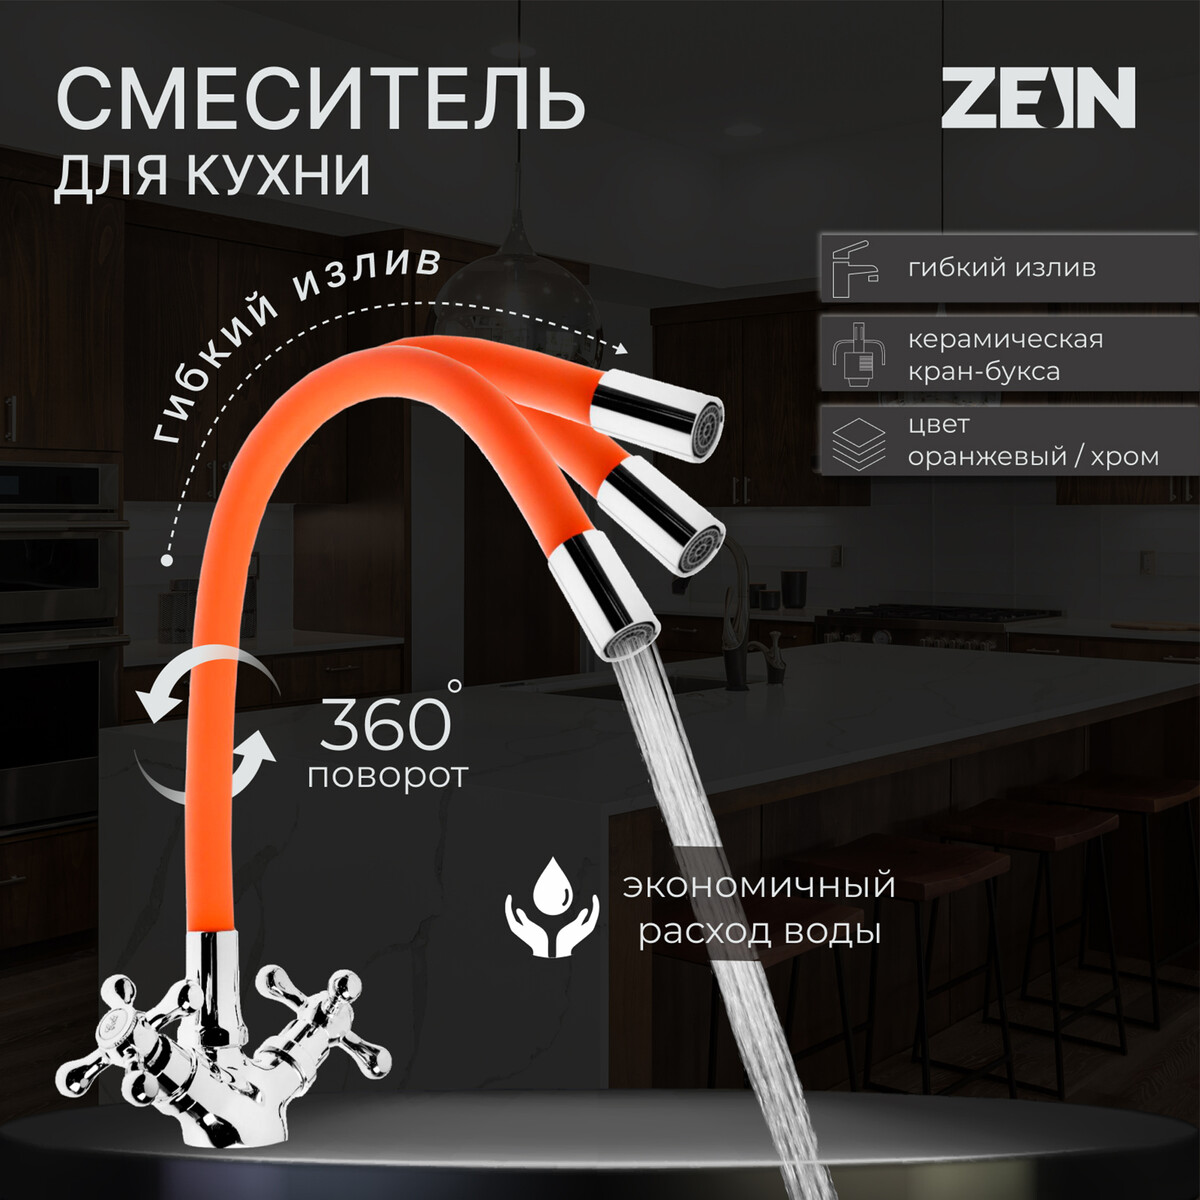 Смеситель для кухни zein z2107, двухвентильный, силиконовый излив, оранжевый/хром смеситель для кухни zein z2114 однорычажный гибкий излив картридж 40 мм оранжевый хром